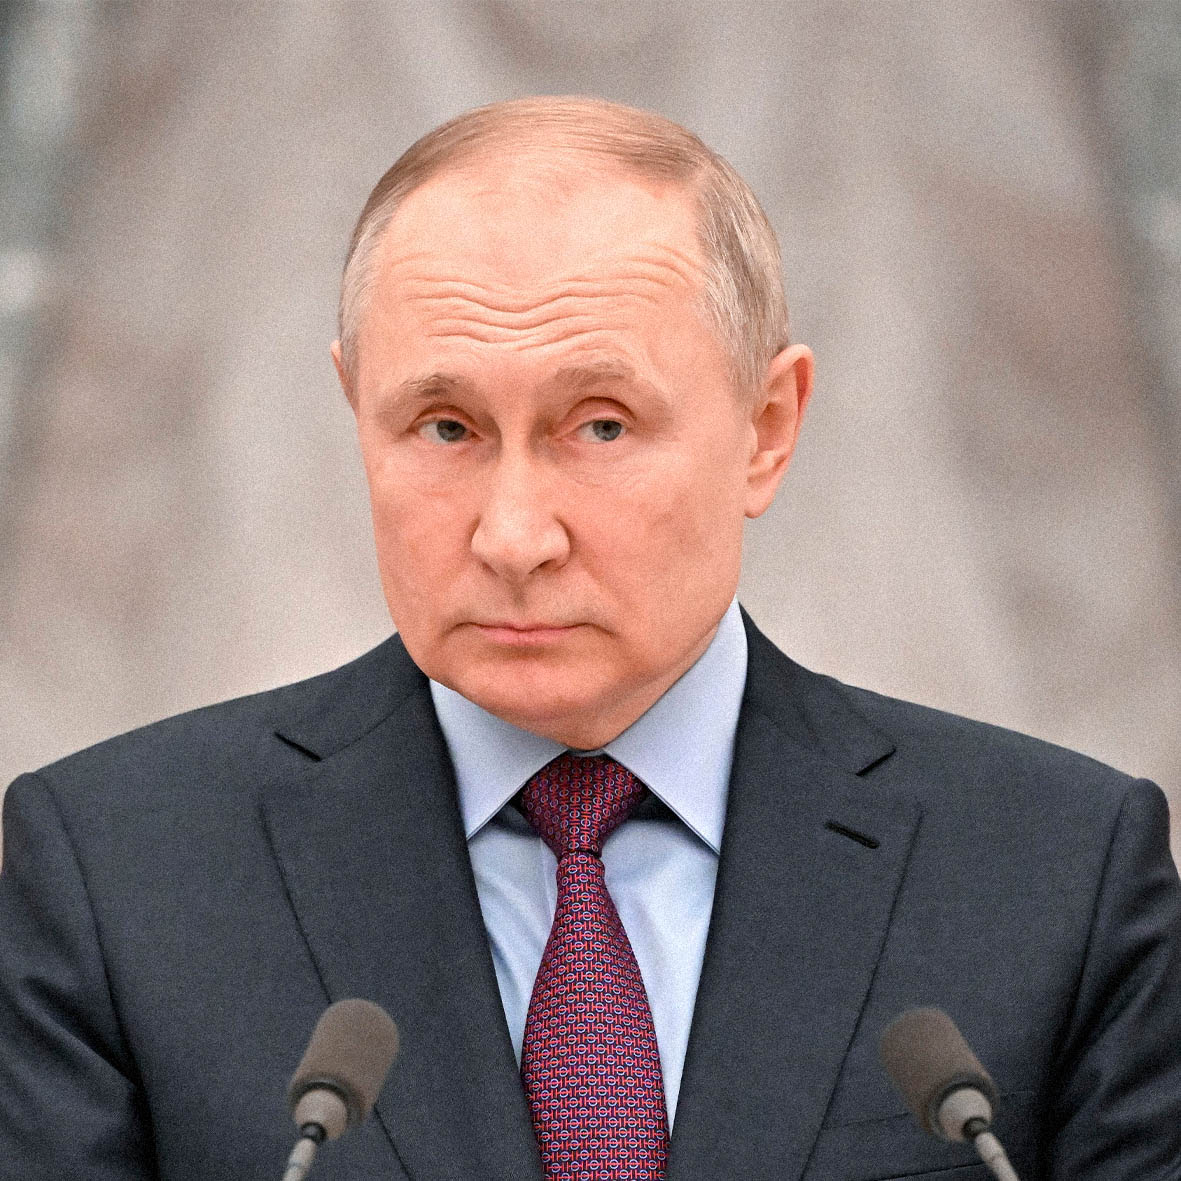 Putin está dispuesto a todo la amenaza de una guerra nuclear alarma al mundo 2